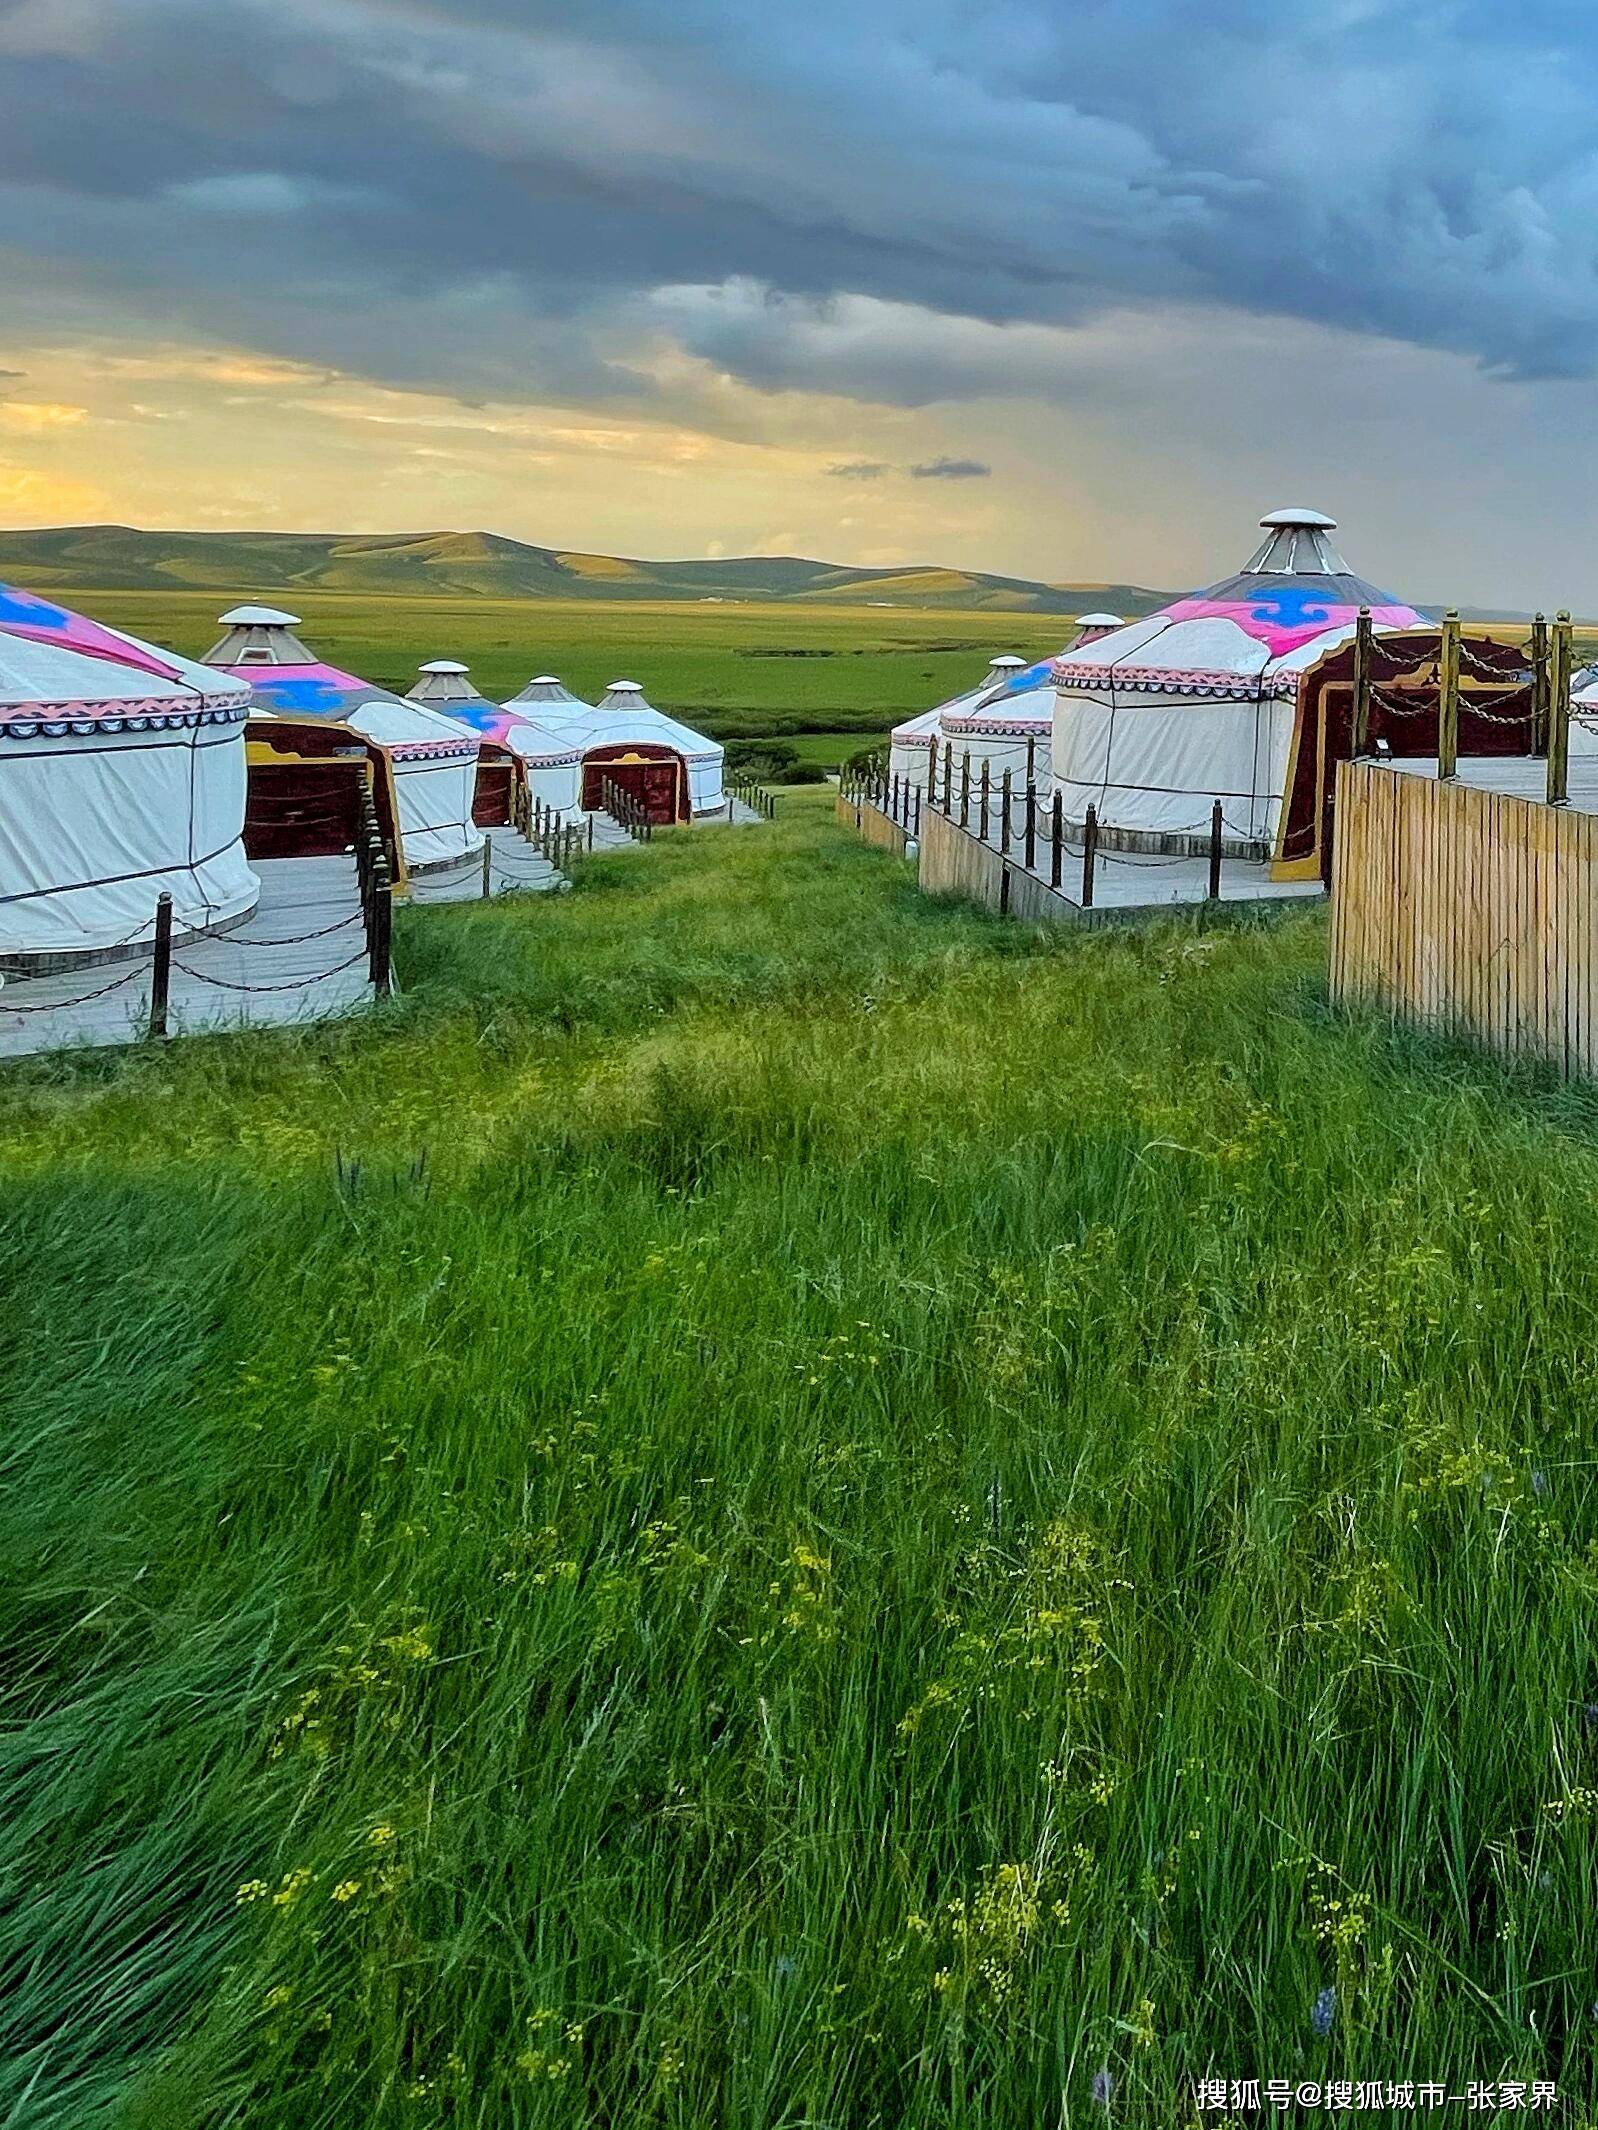 琥珀博物馆—敕勒川草原—萨拉齐萨拉齐镇得名于蒙古语做奶食的地方